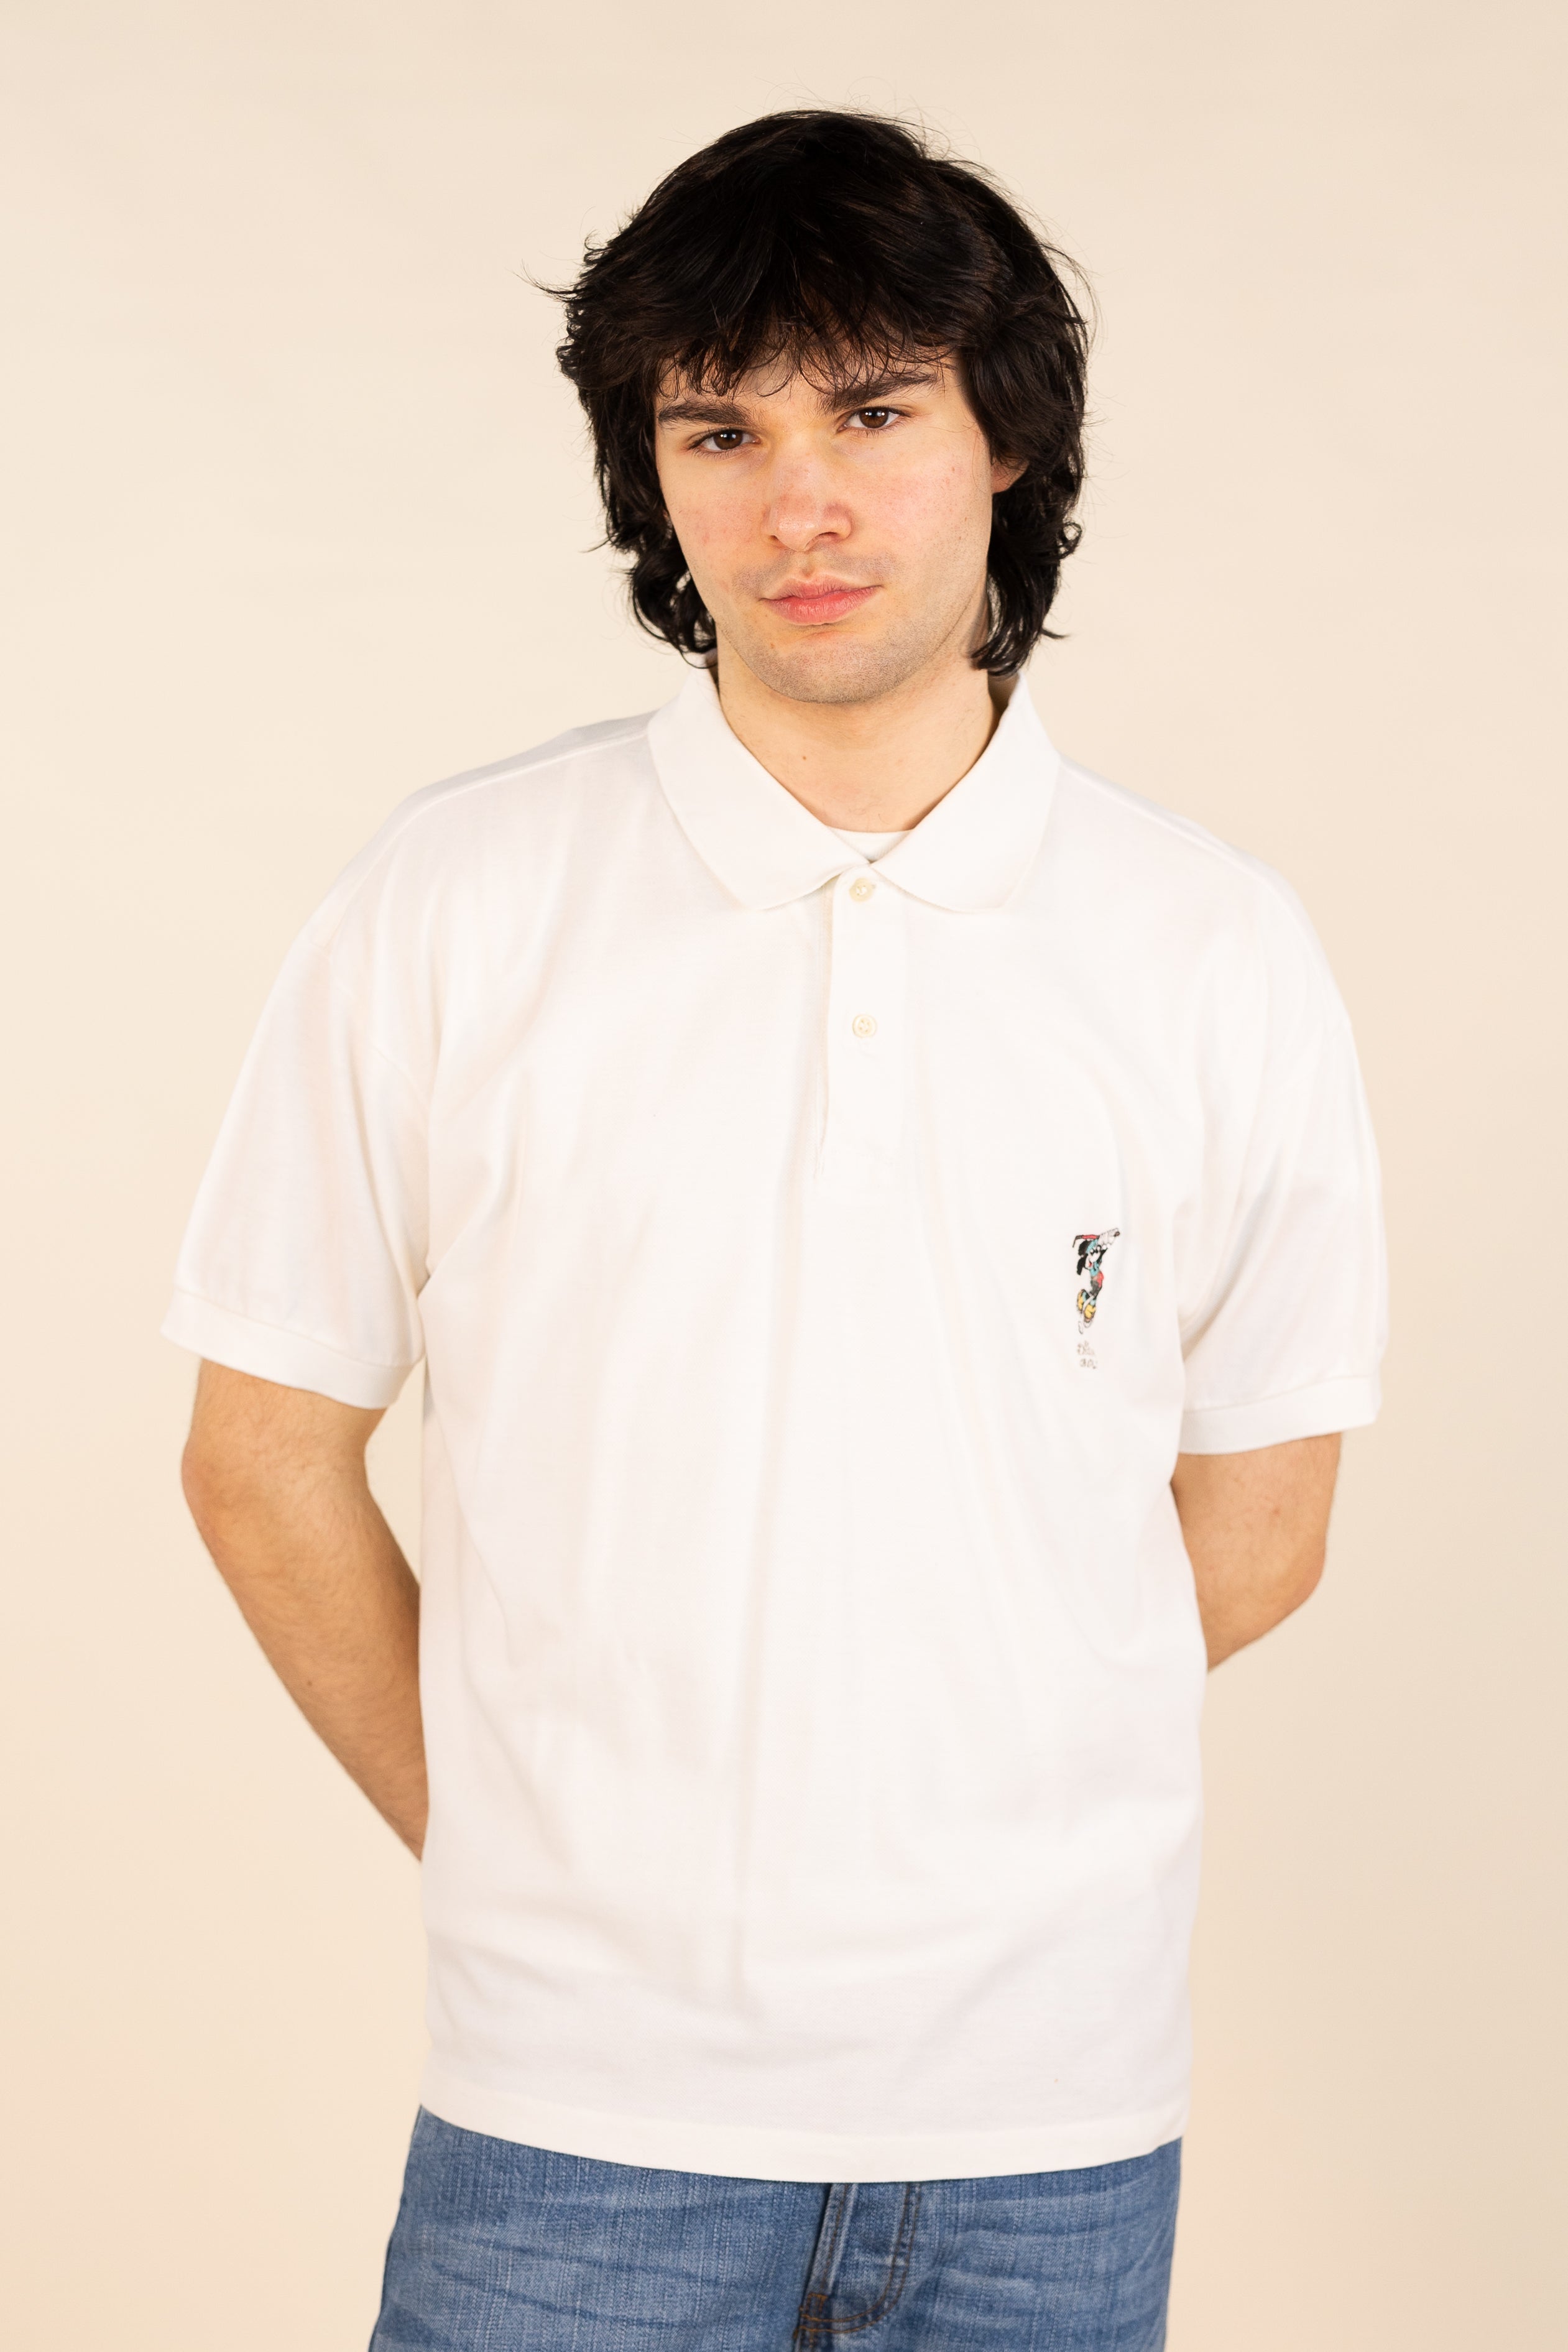 90s Polo Shirt